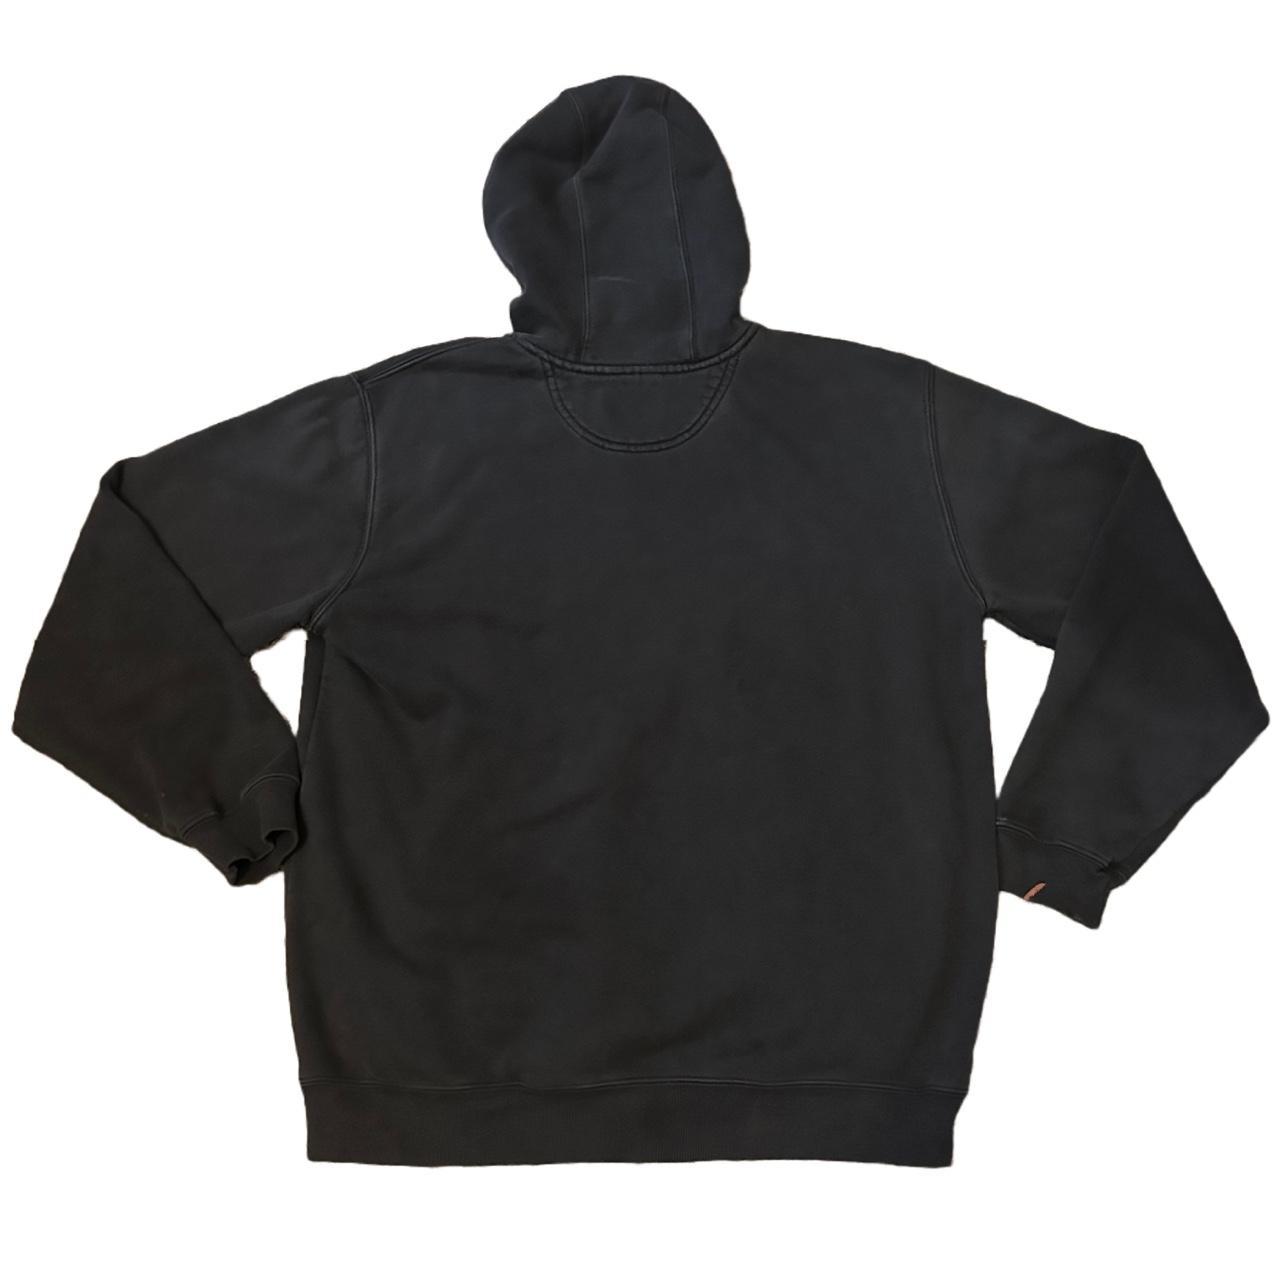 Vintage Carhartt Black Hoodie SZ L Sweatshirt... - Depop